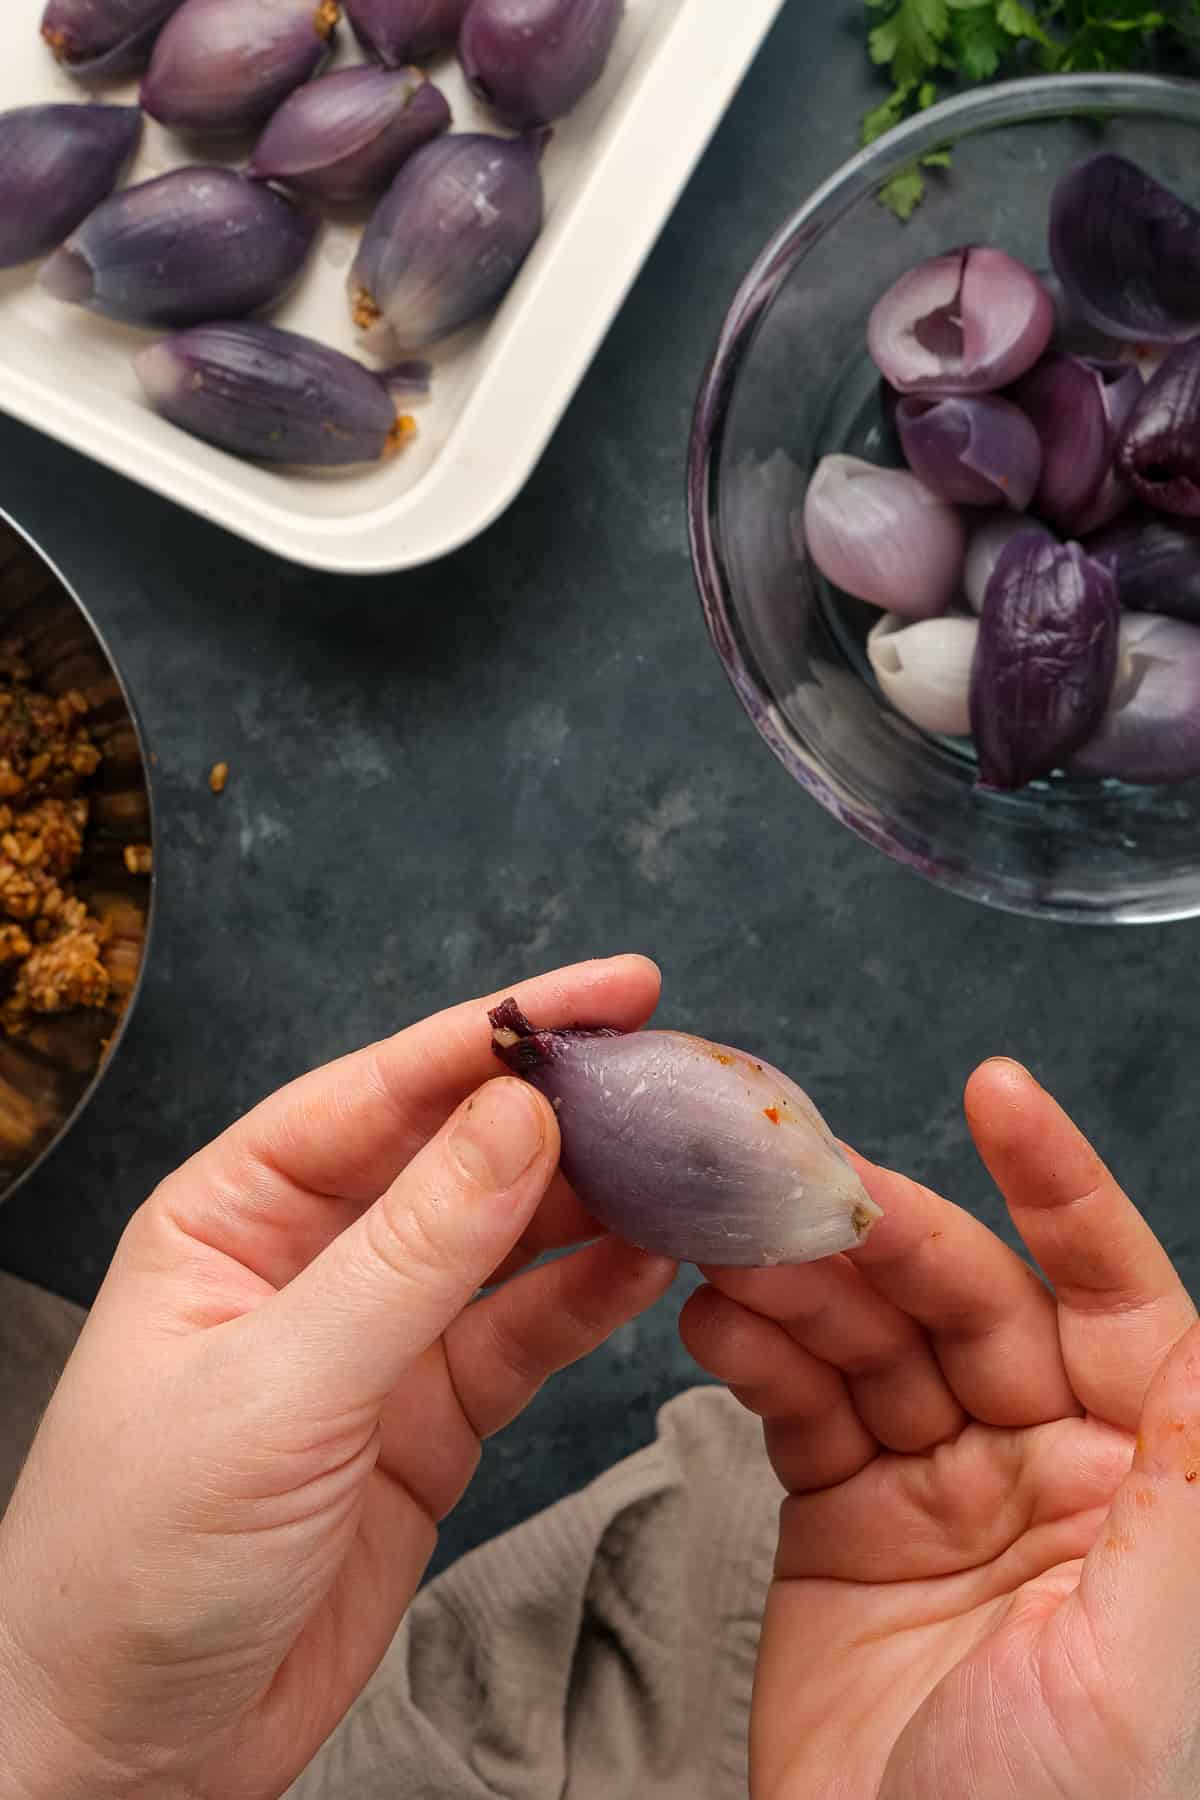 手拿一个紫洋葱馅和更多的洋葱馅放在平底锅里，盛在一个碗里，煮熟的洋葱放在另一个碗里。